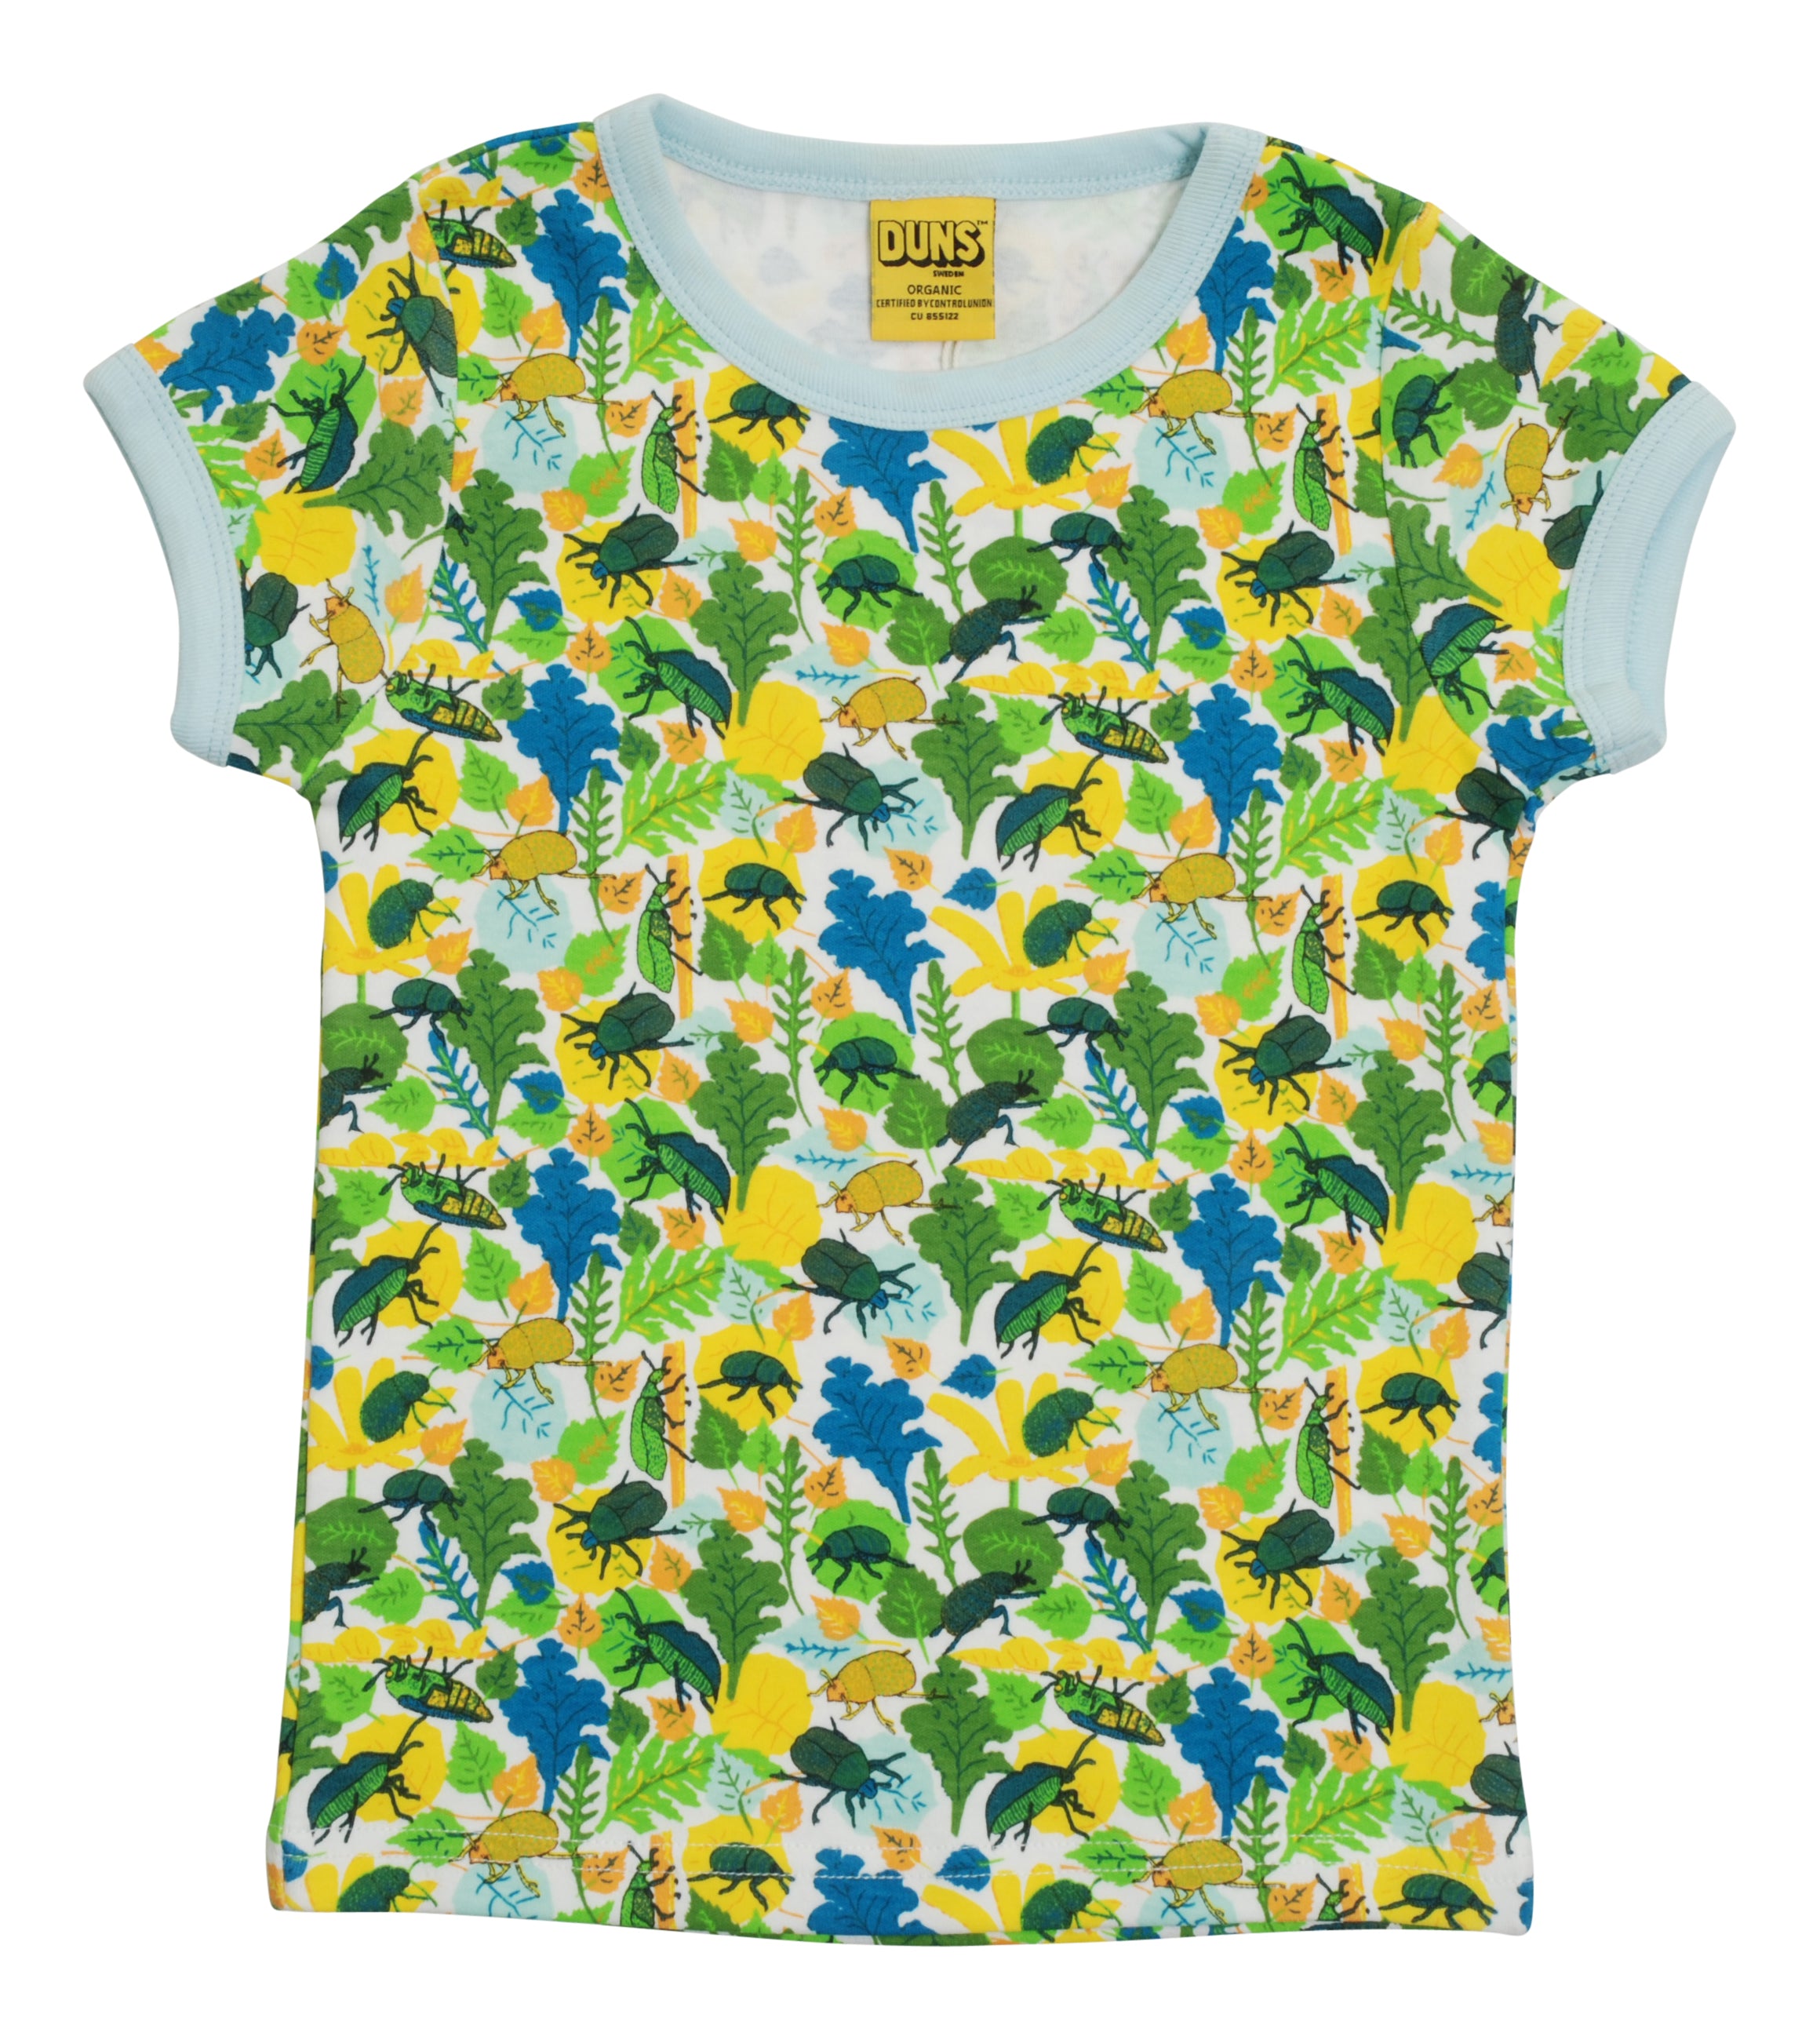 T-shirt / Short Sleeve Top Beetle - Duns Sweden